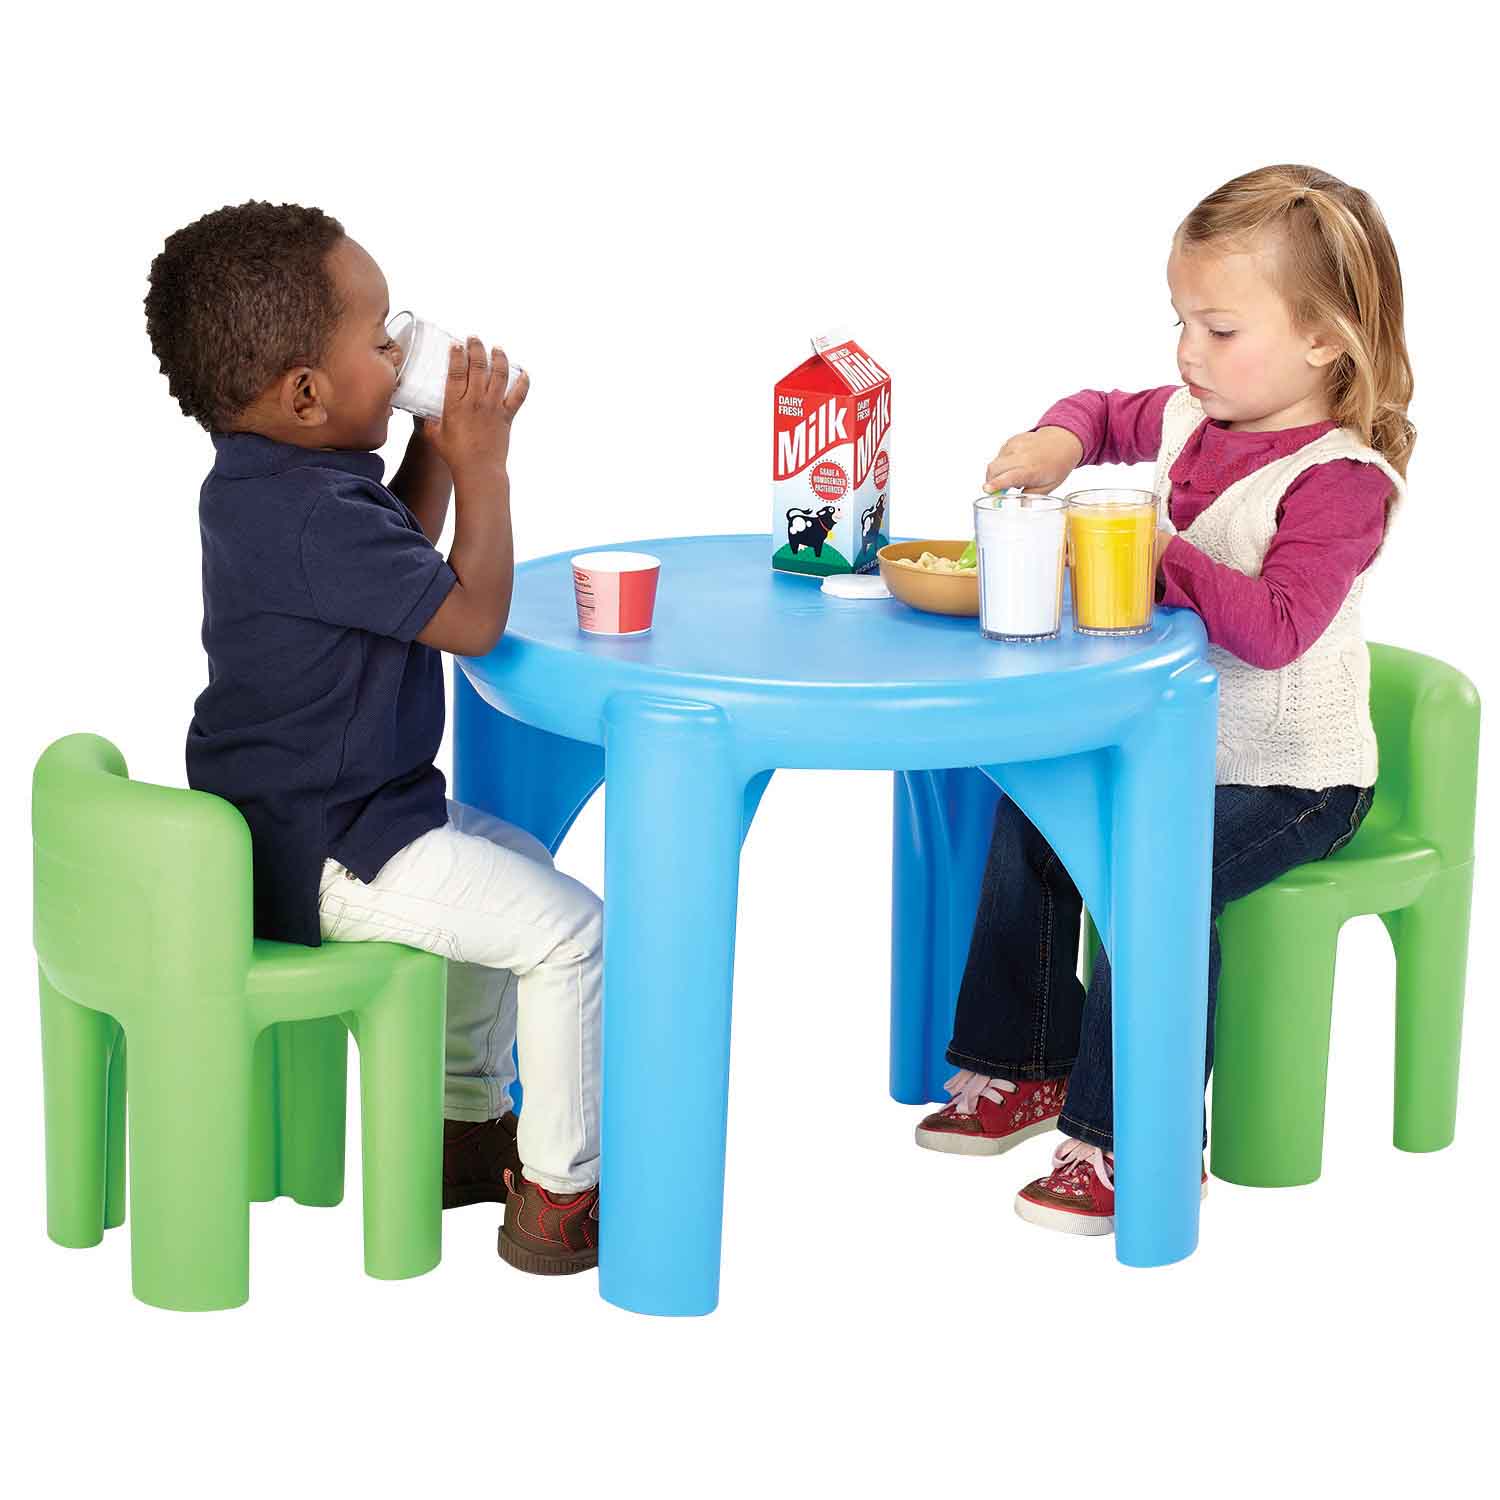 Café Play Table Set